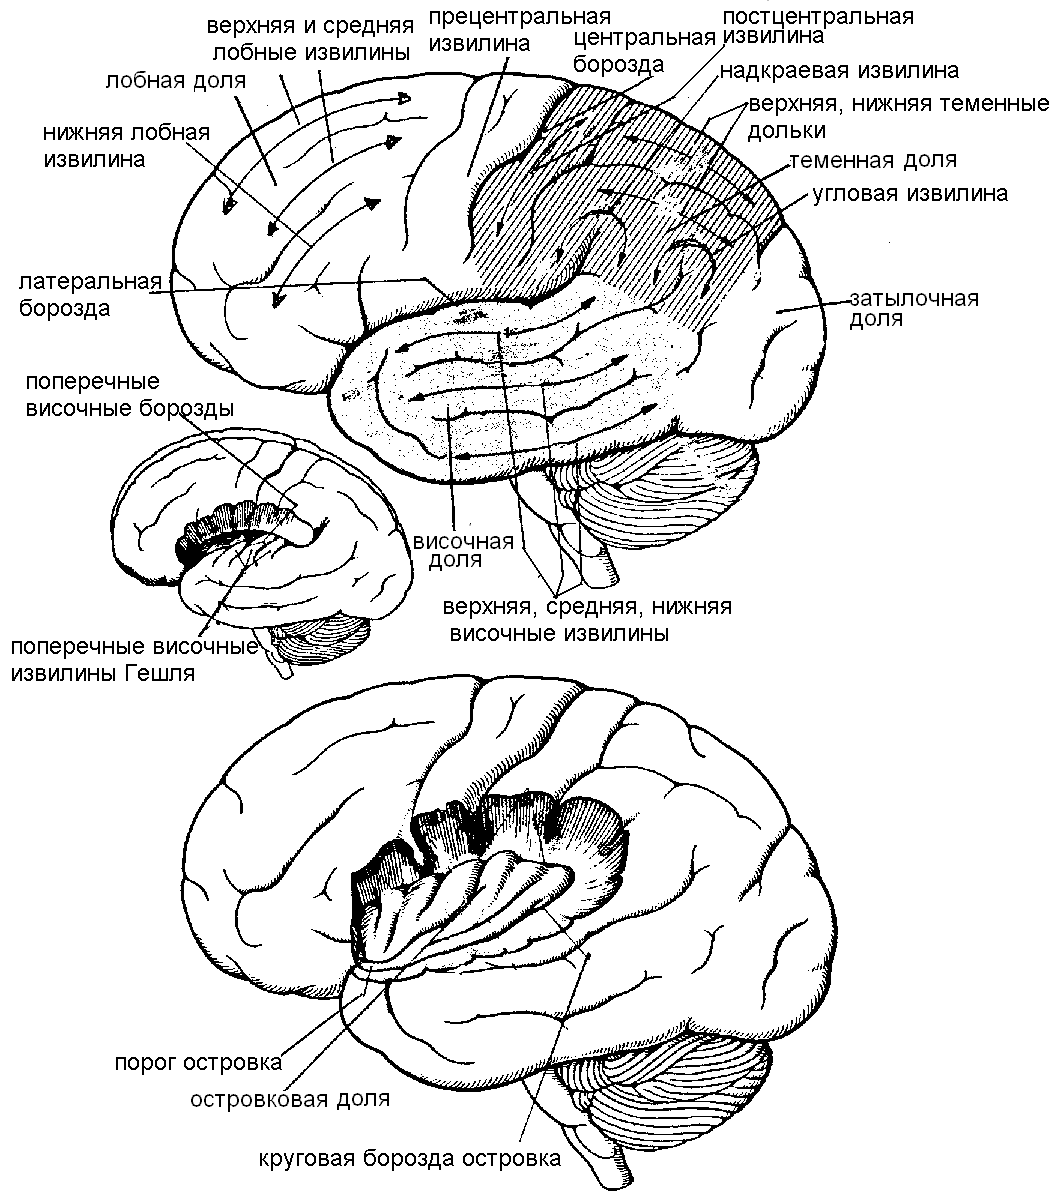 Теменная зона коры мозга